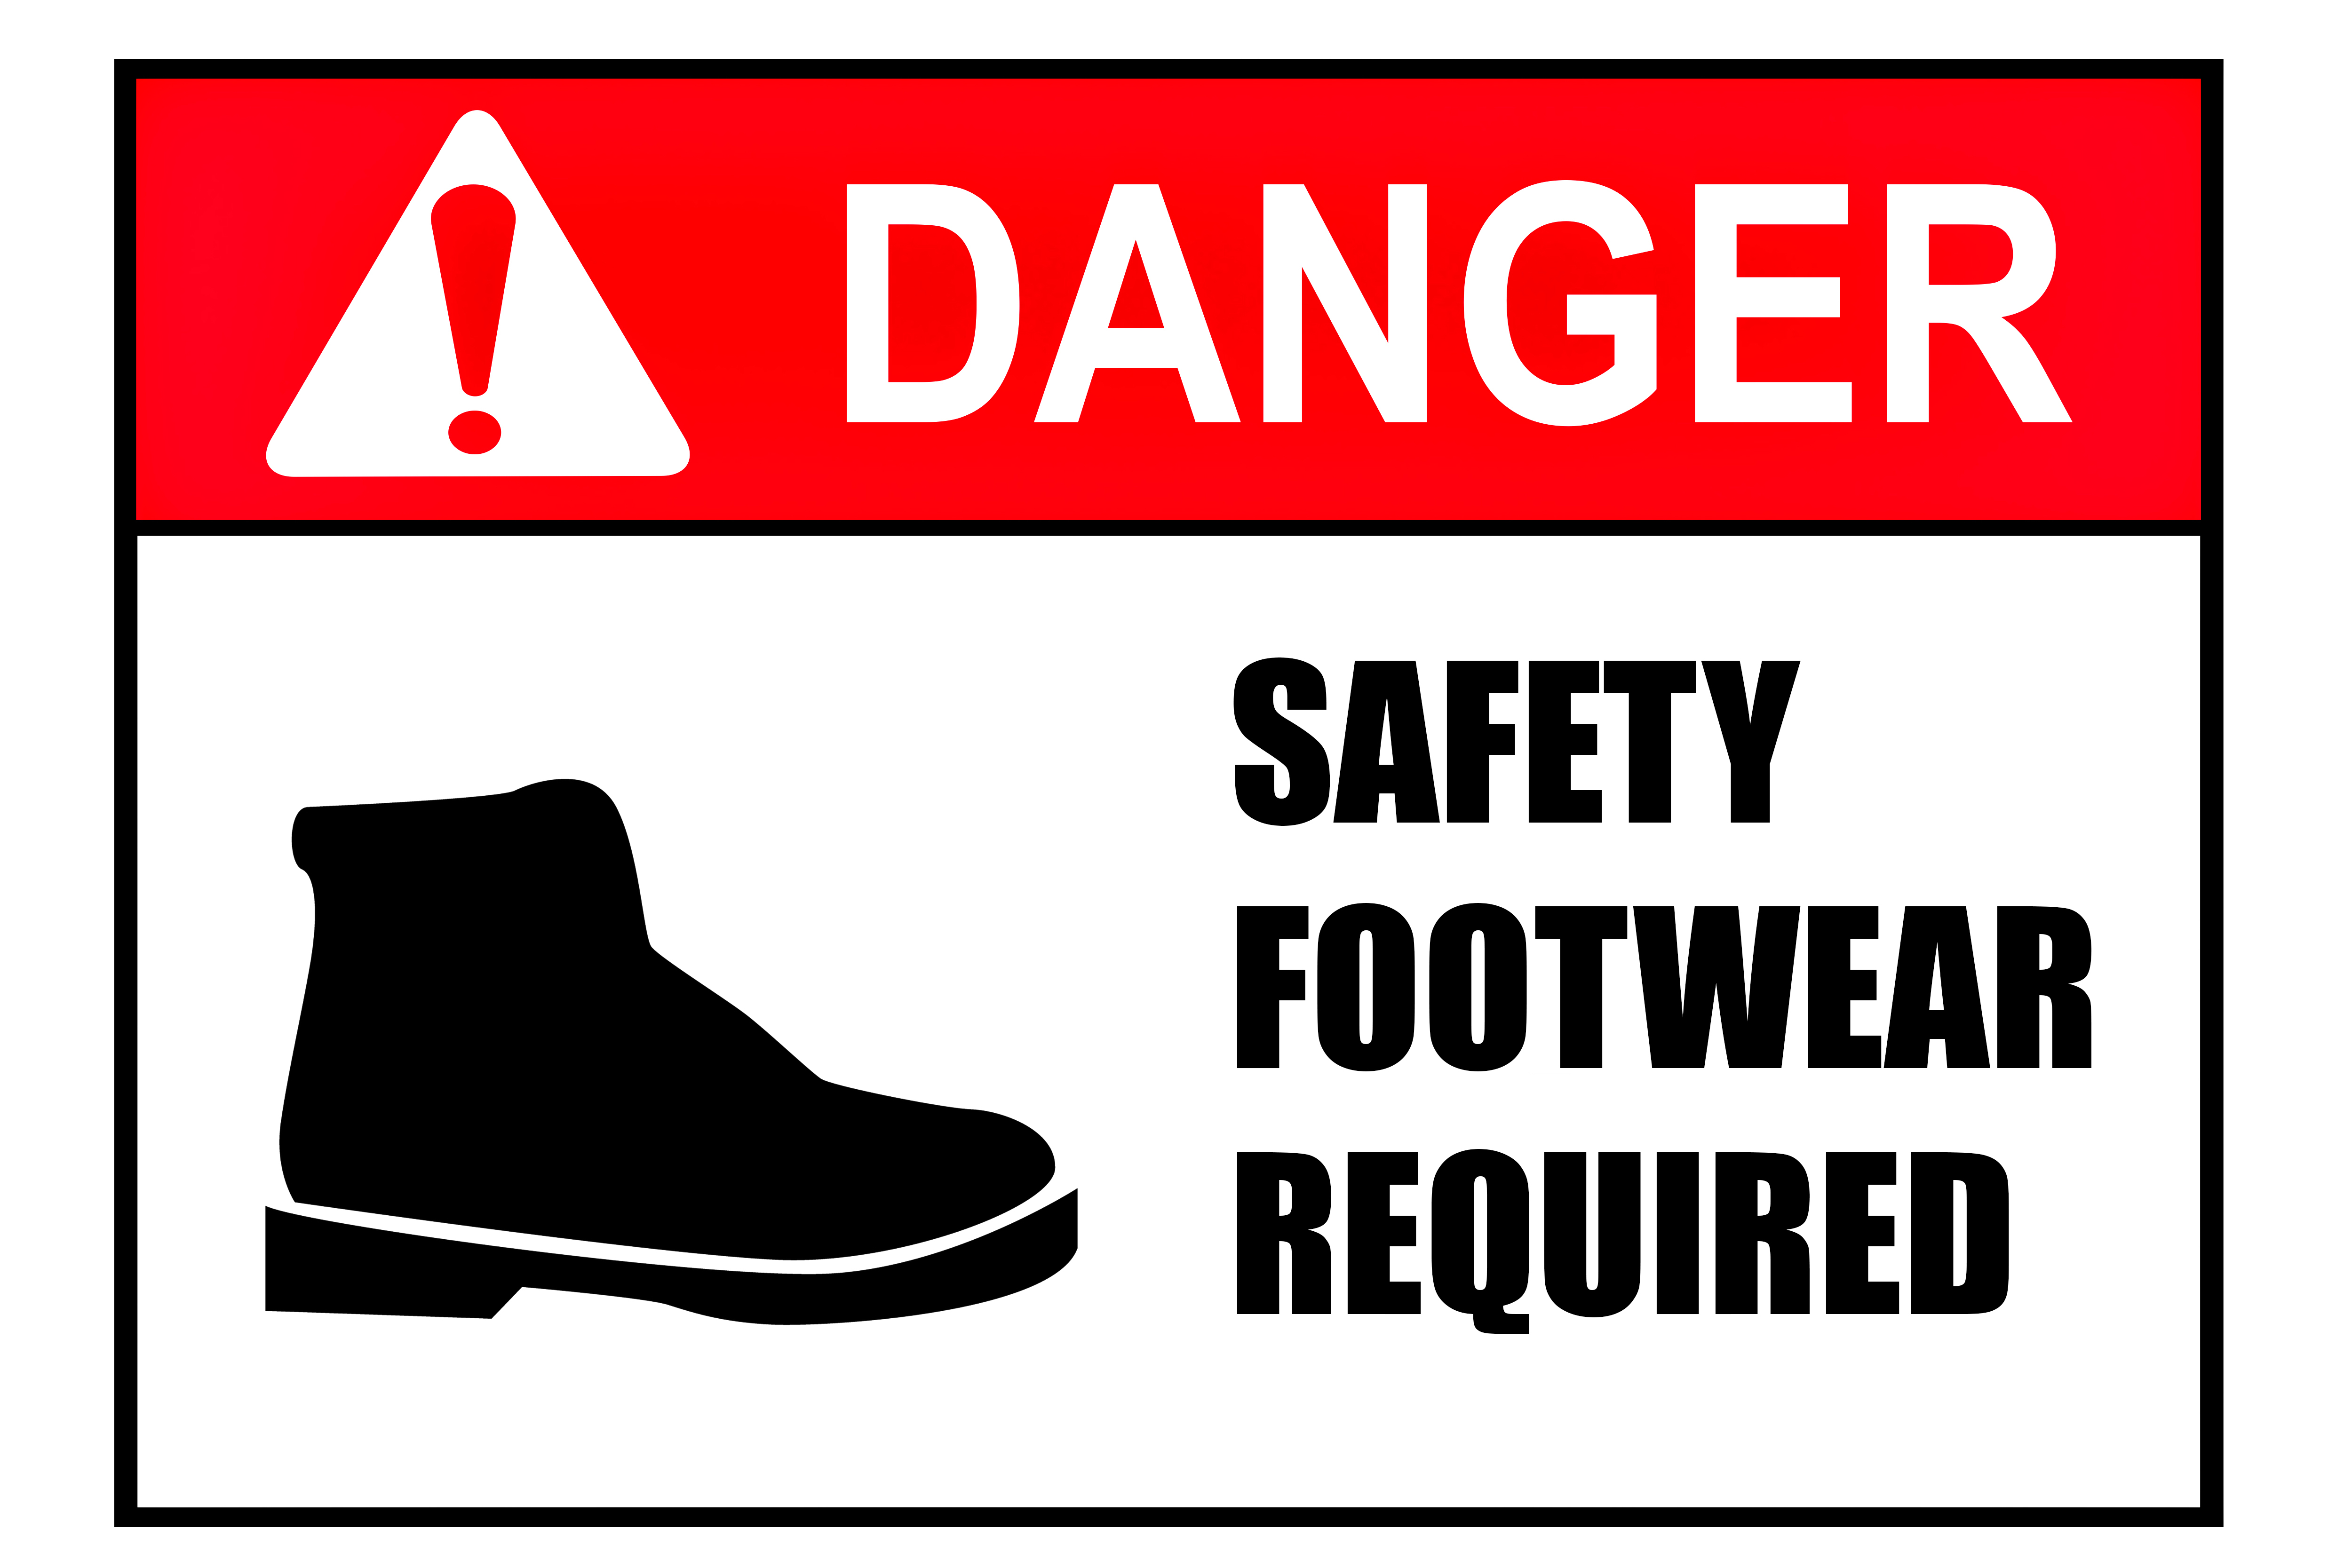 steel toe boots dangerous